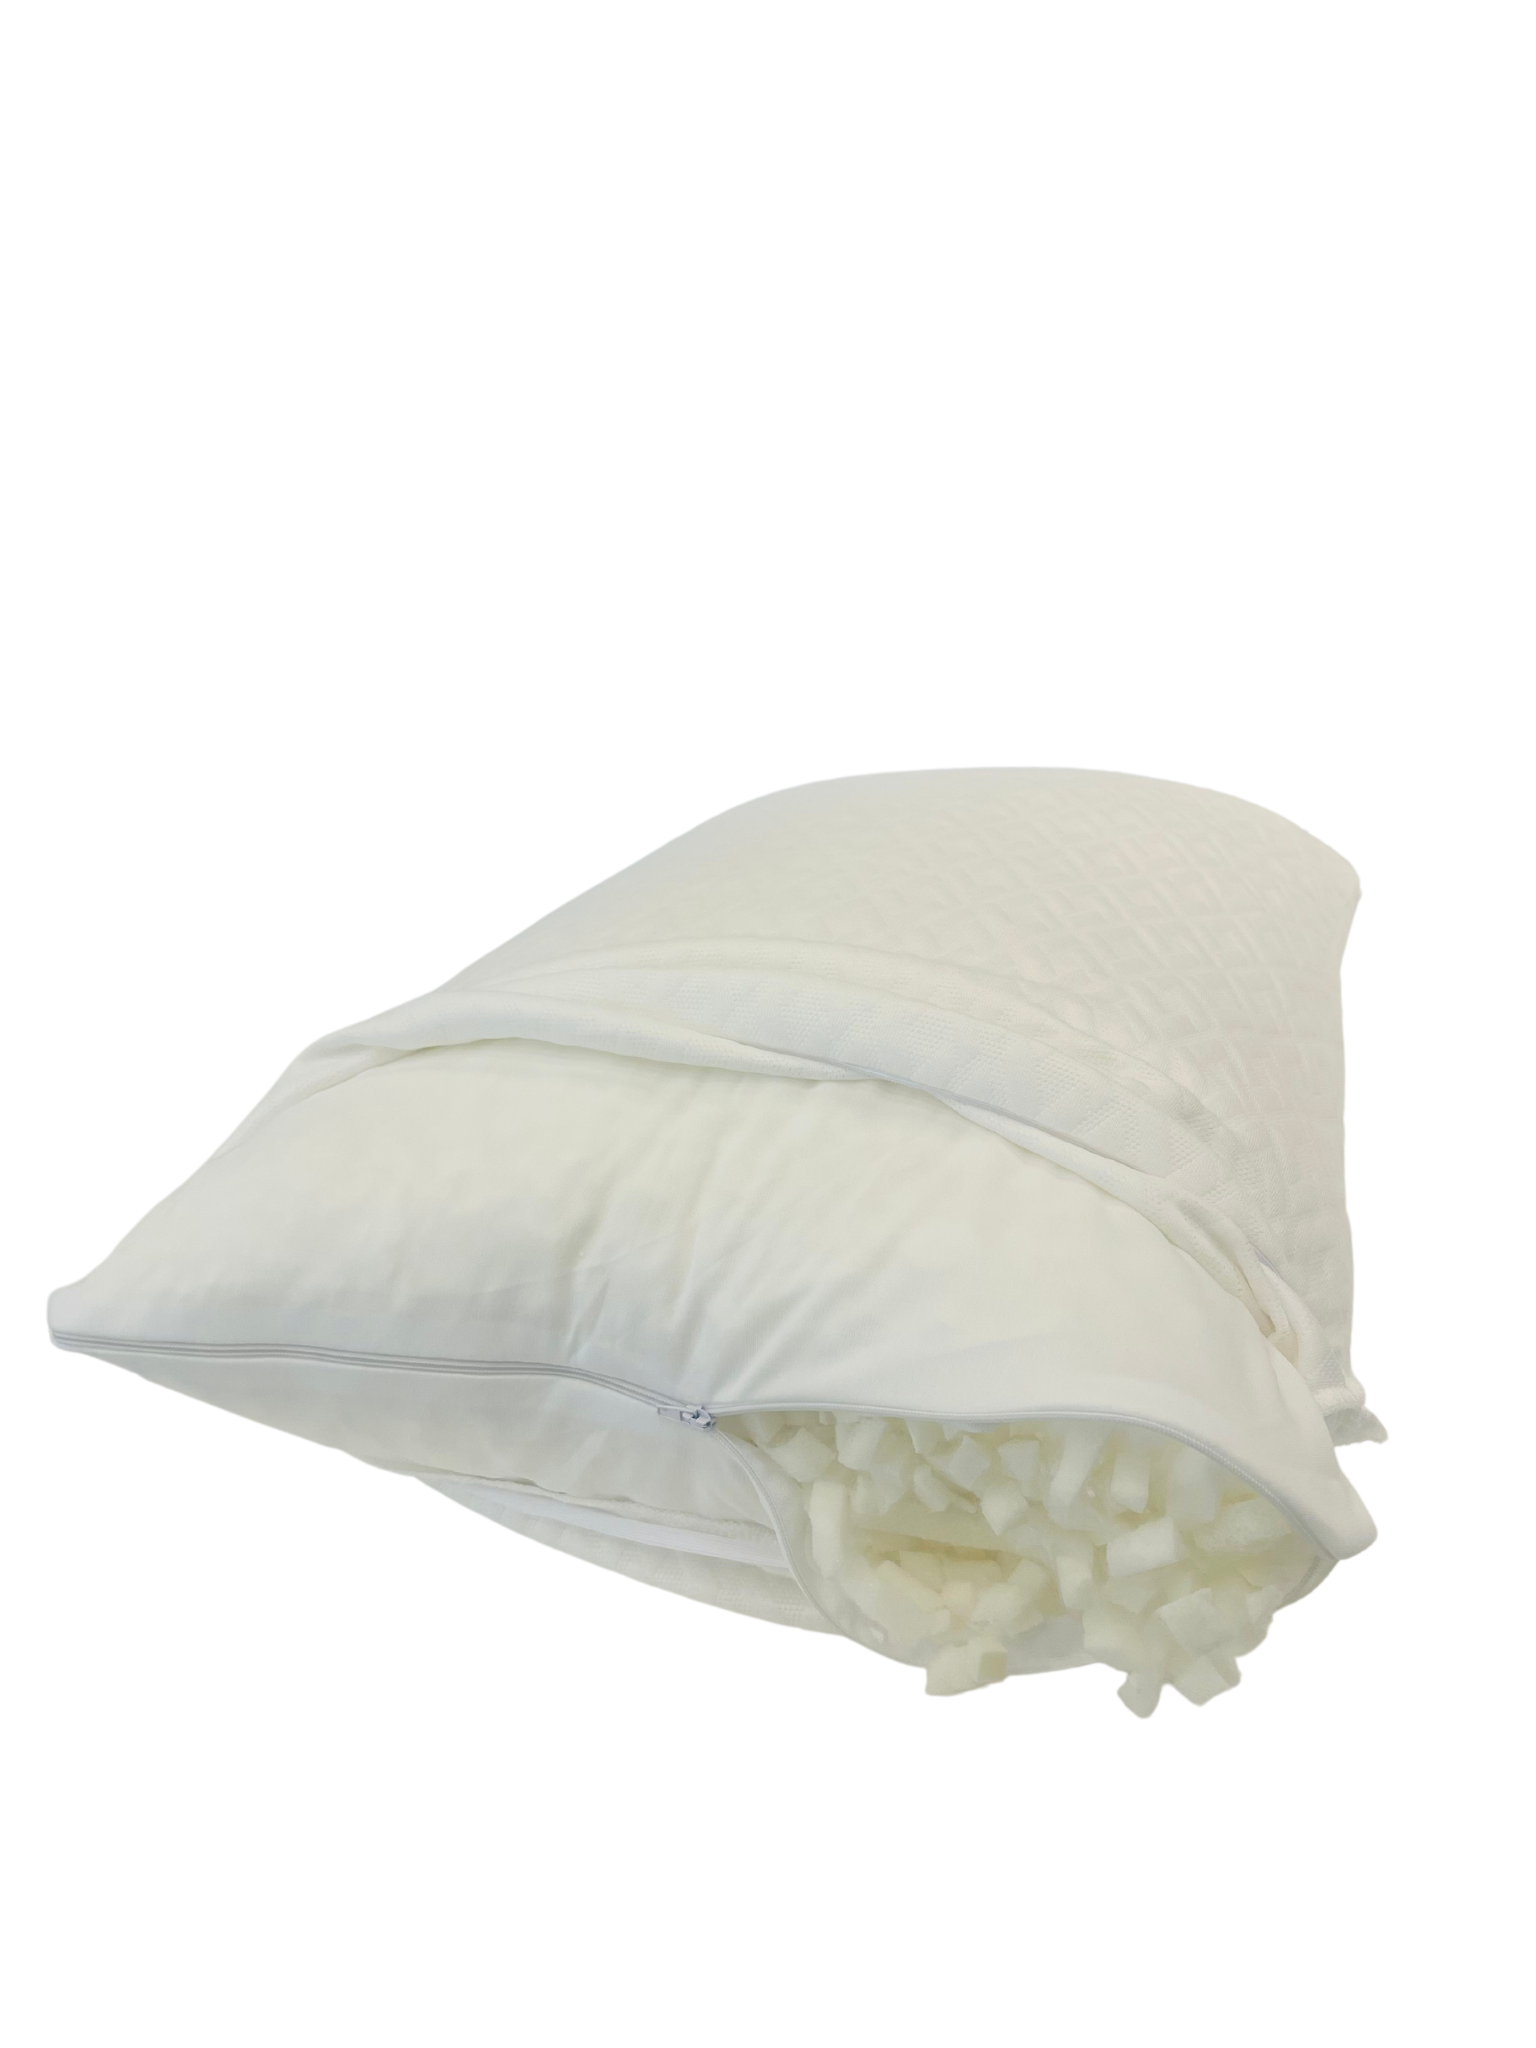 Wesloft Adjustable Bamboo Pillow